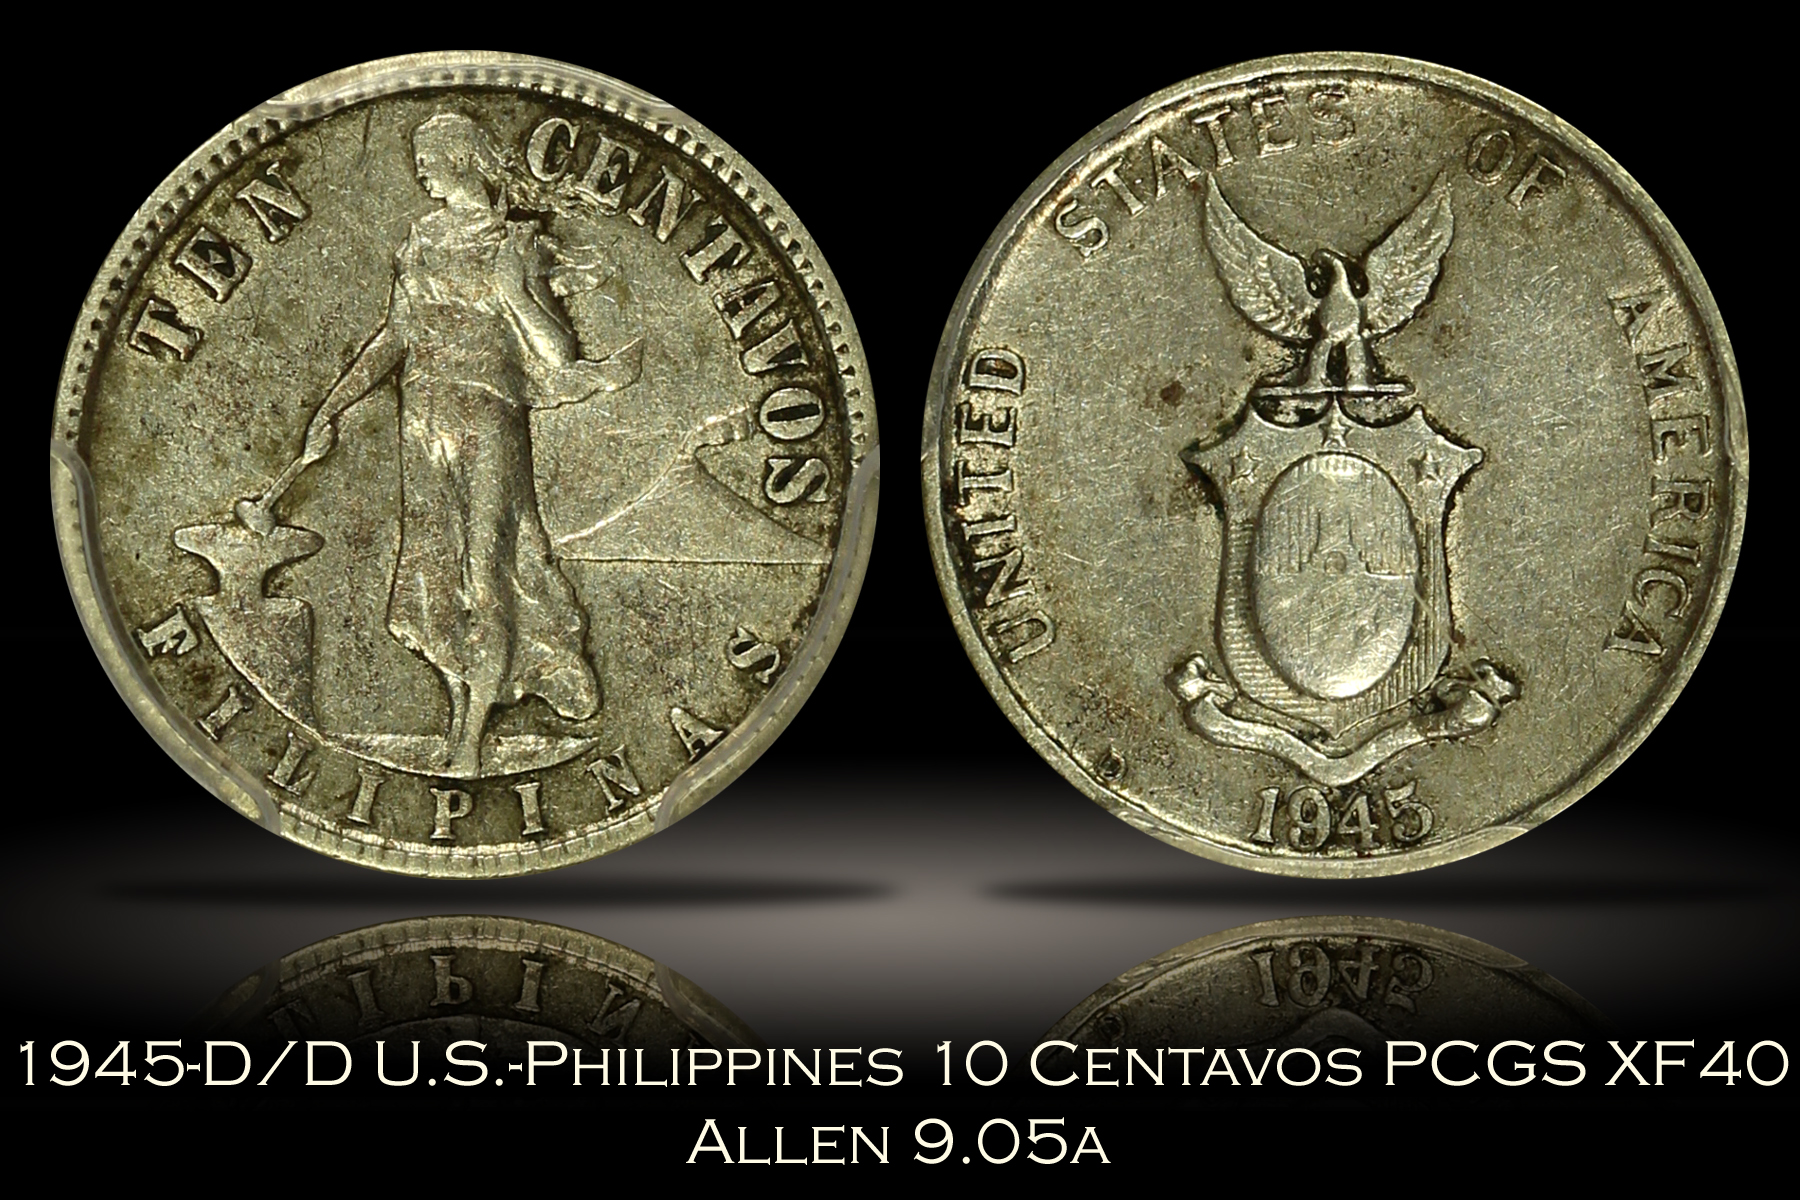 1945-D/D U.S.-Philippines 10 Centavos RPM Allen 9.05a PCGS XF40